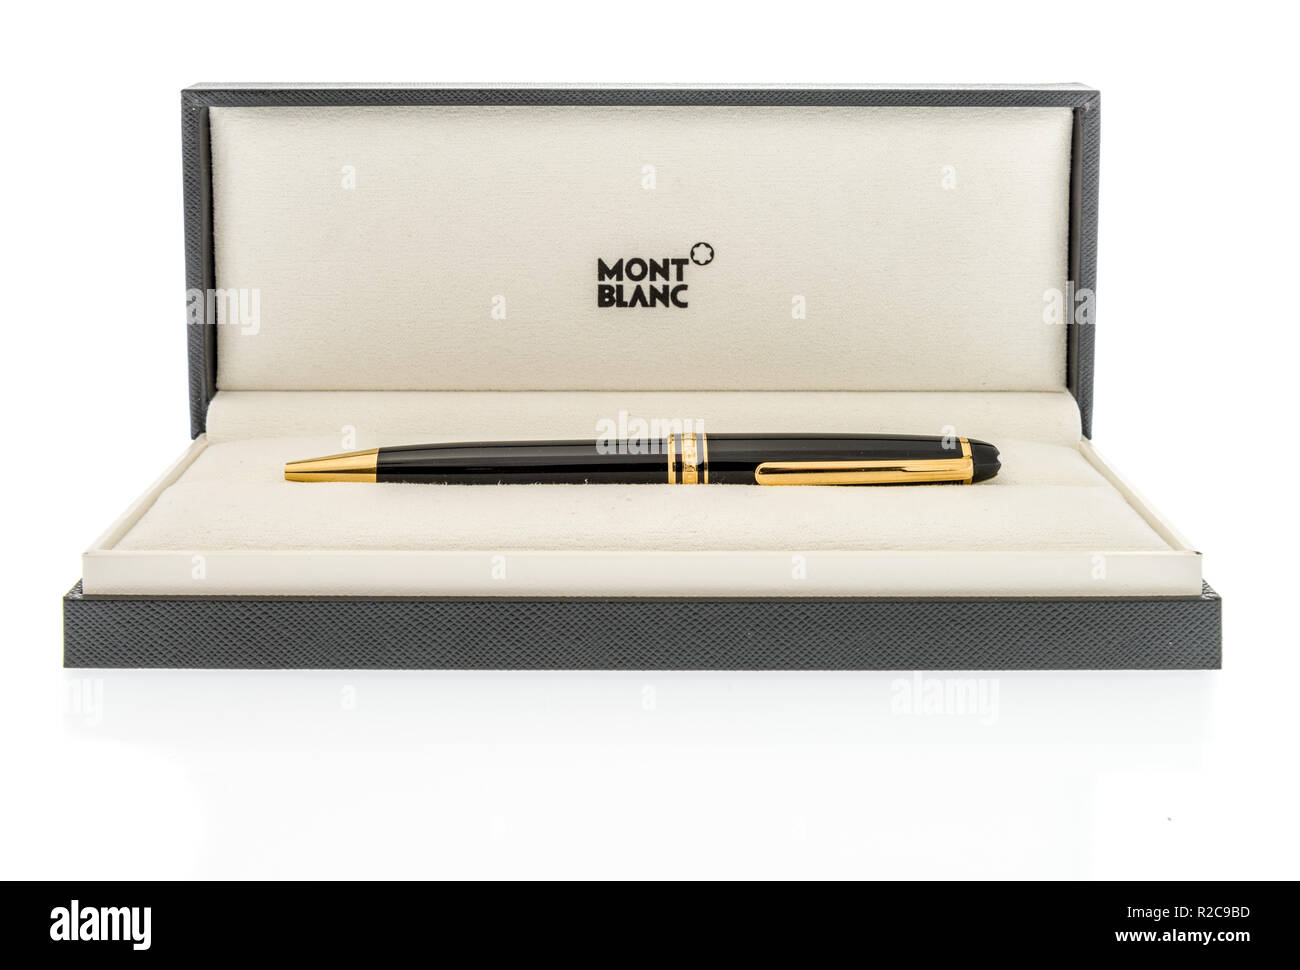 Montblanc stylo Banque d'images détourées - Alamy